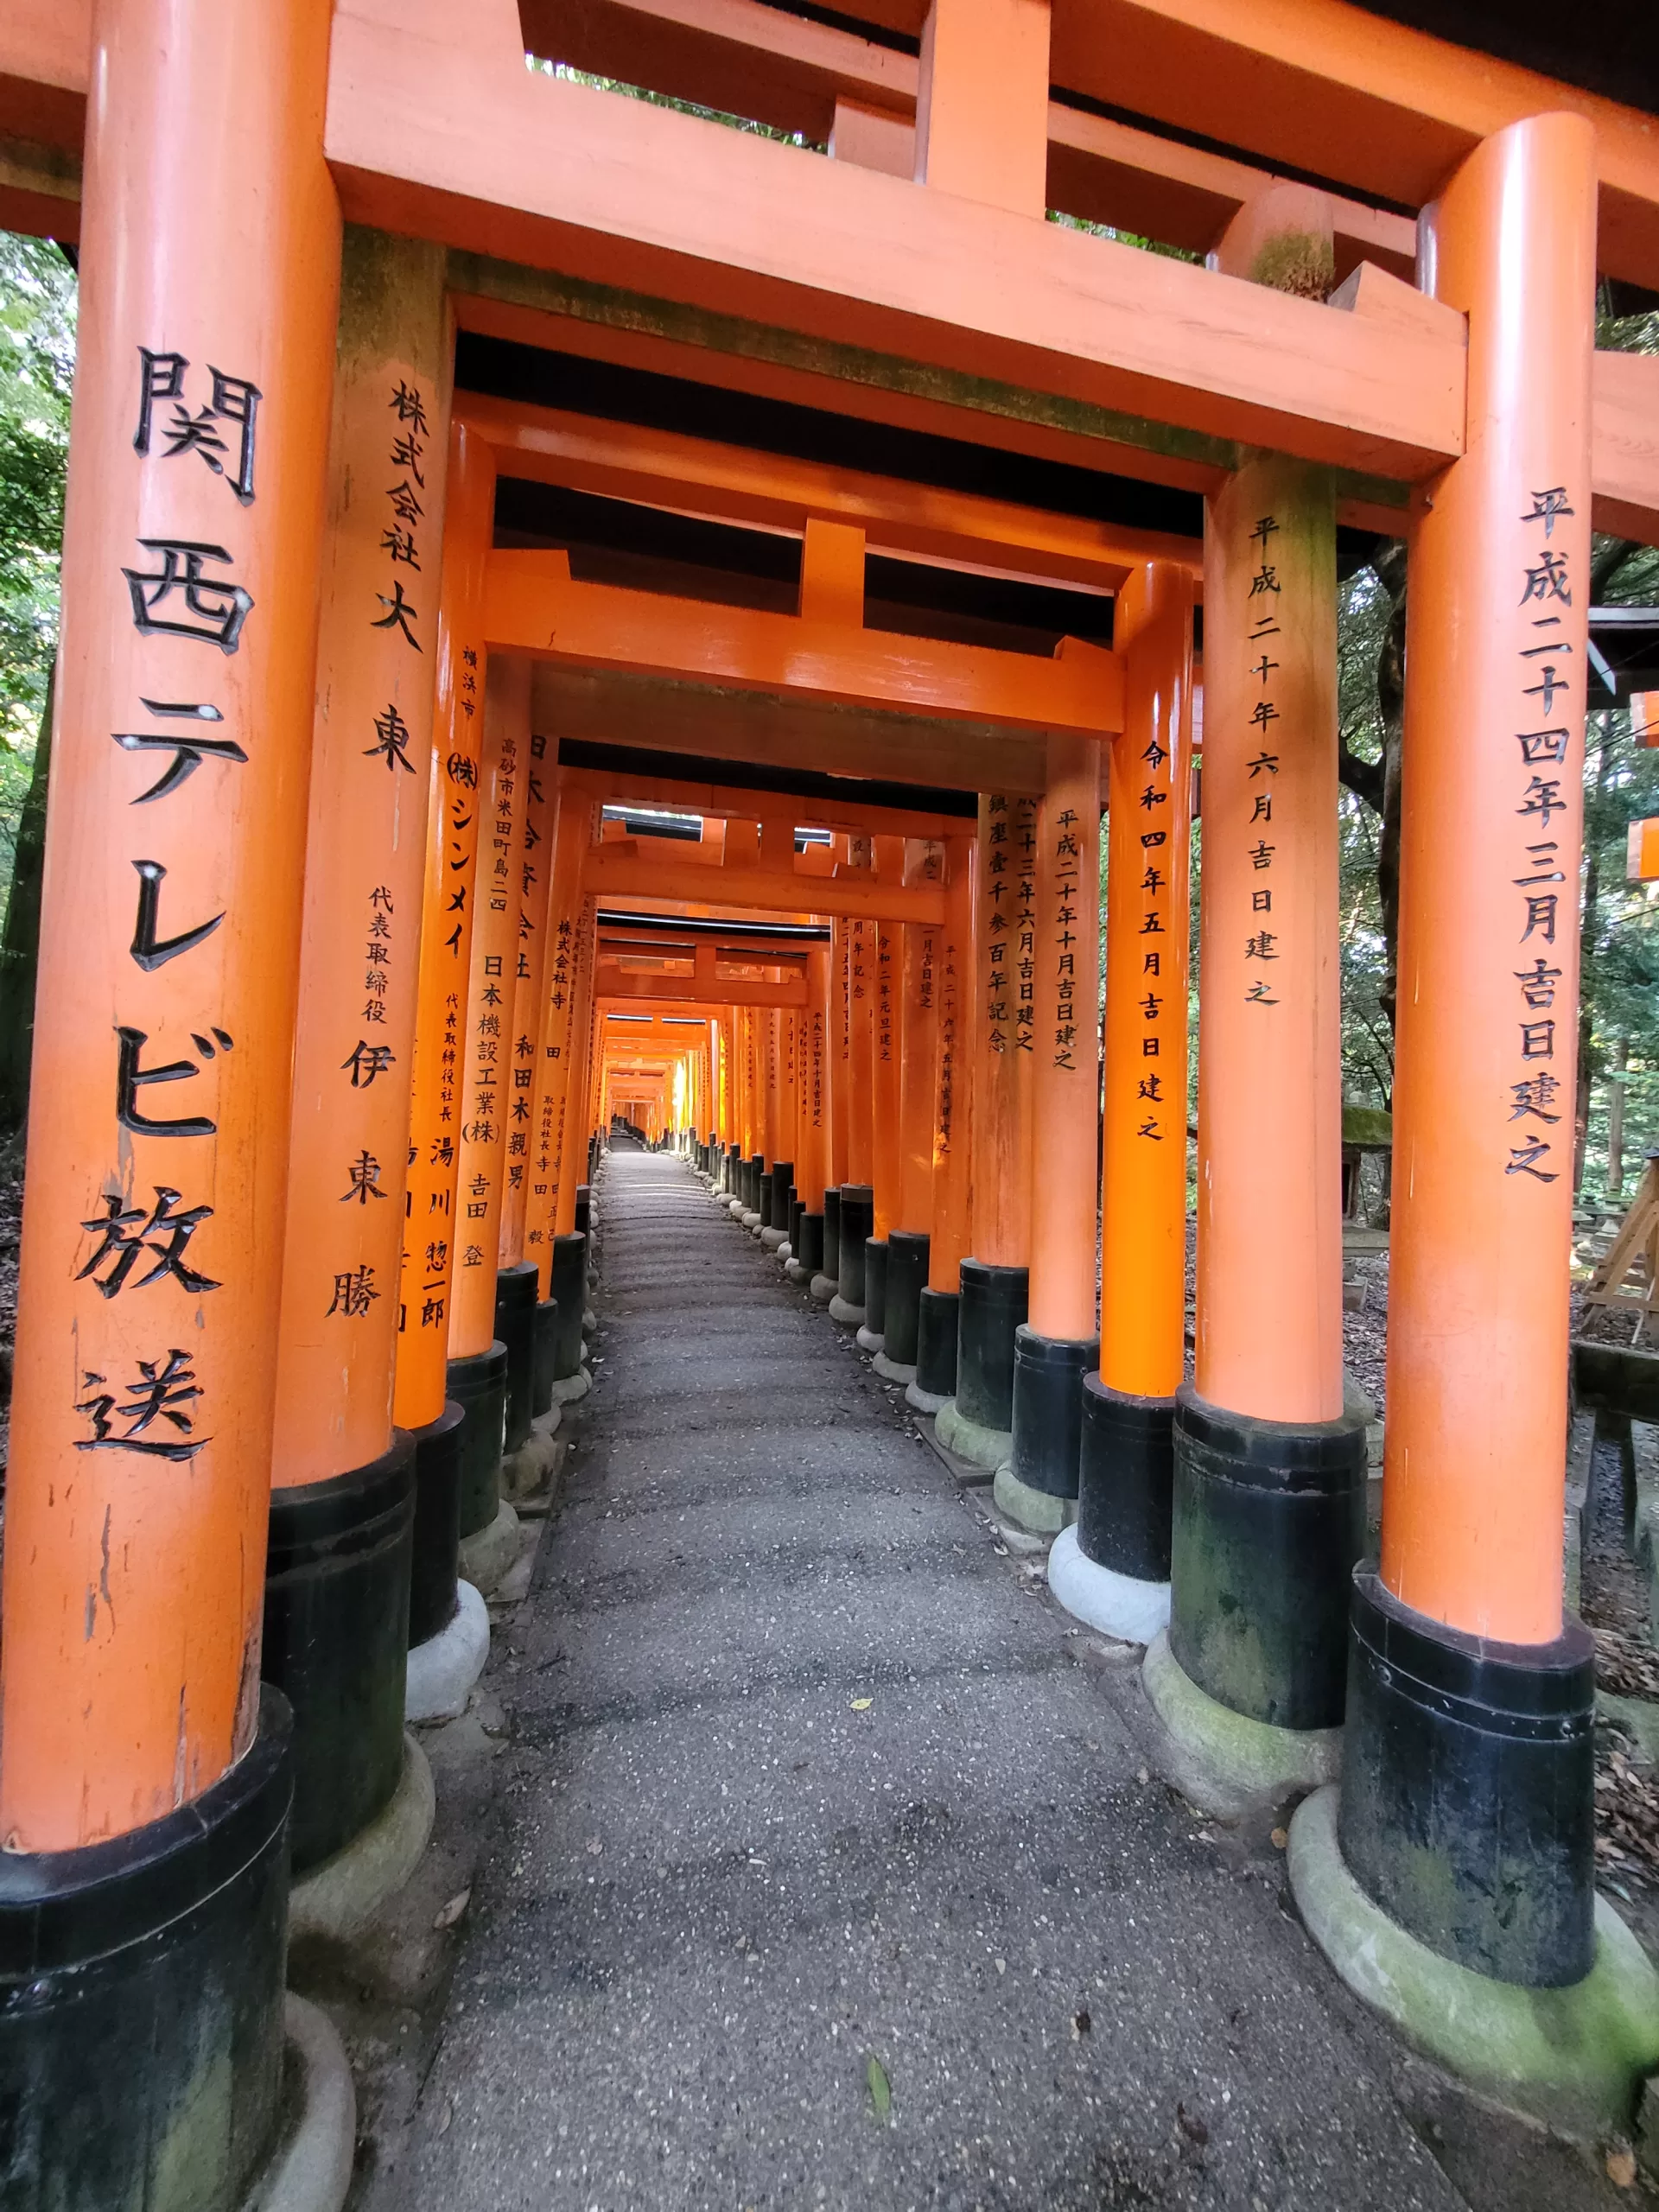 A day at Fushimi Inari Taisha – Japan’s most popular shrine